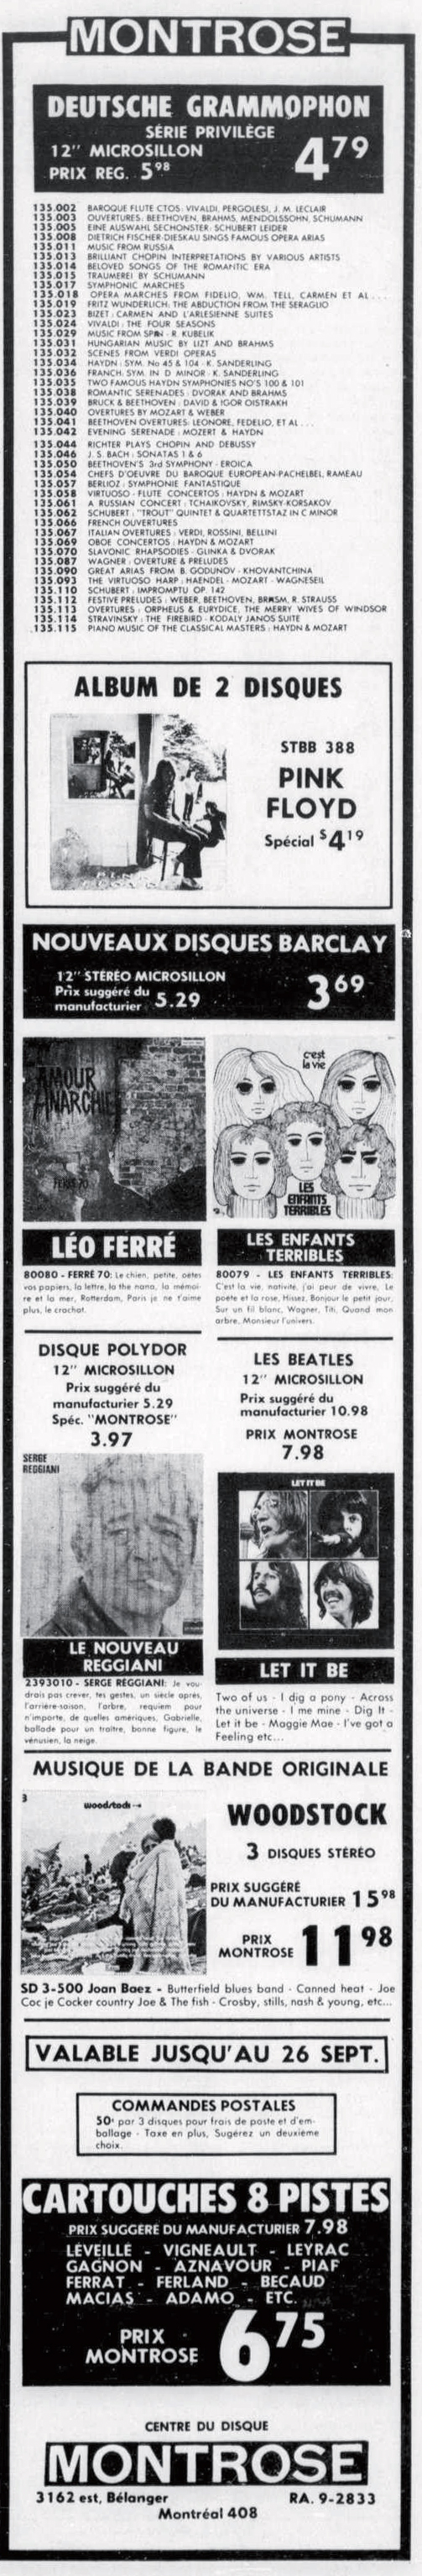 Léo Ferré - Le devoir, 1910- (Montréal), vendredi 4 septembre 1970